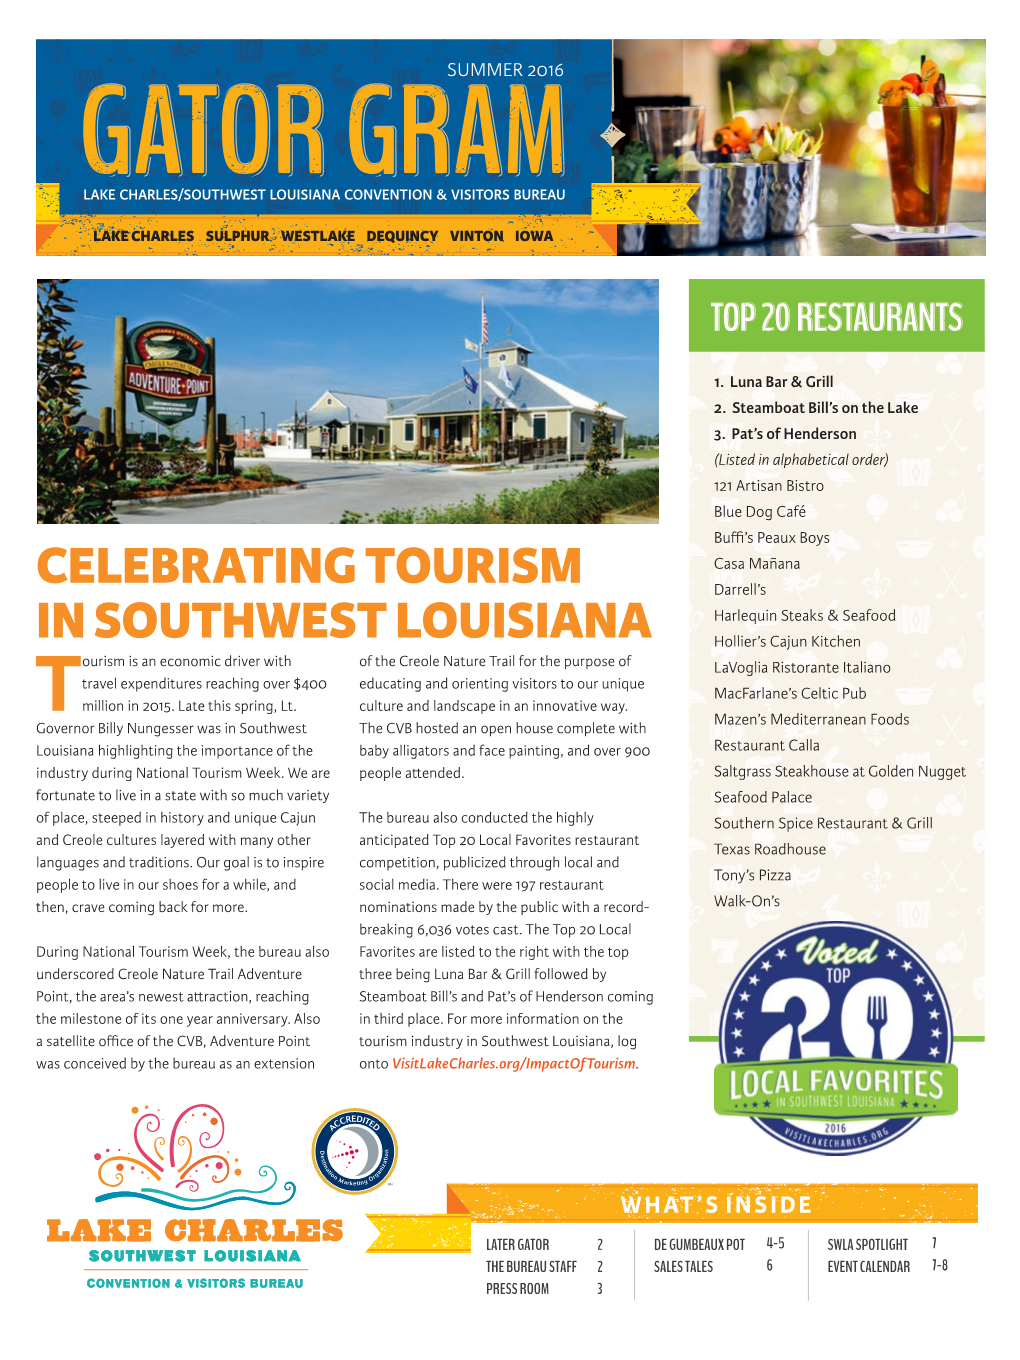 Celebrating Tourism in Southwest Louisiana